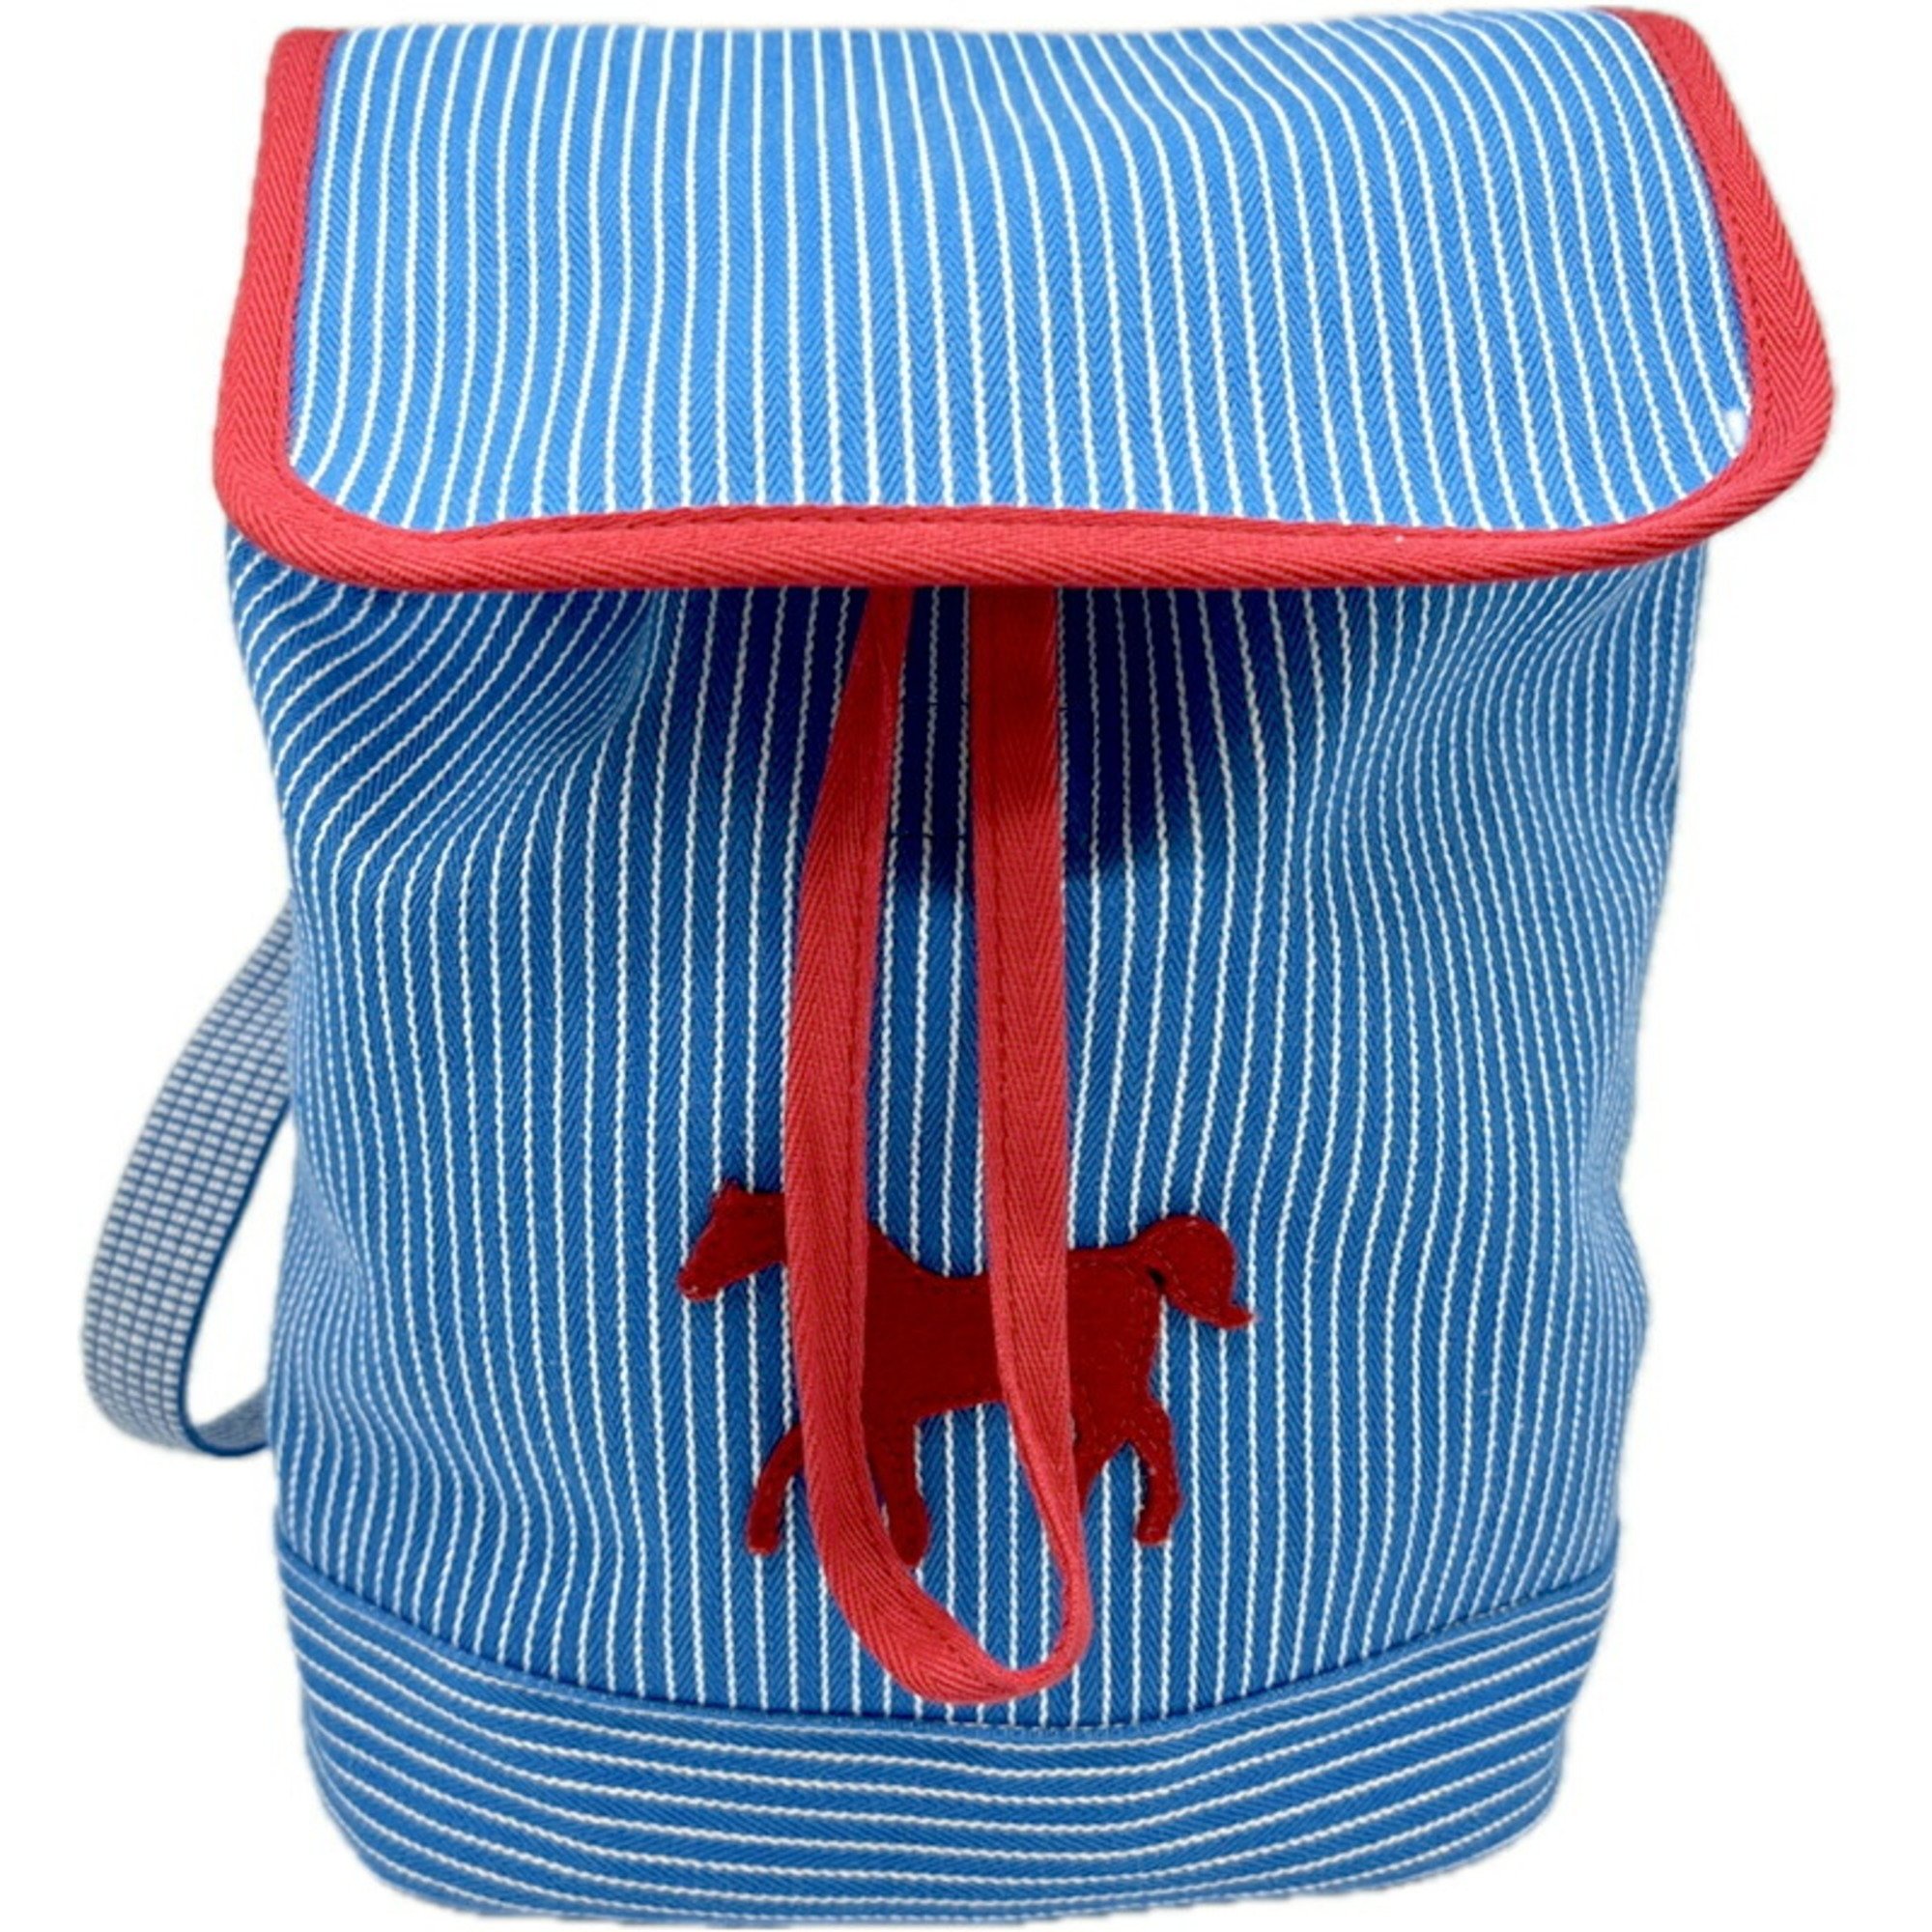 HERMES Horse Backpack for Kids Striped Caval Color Rucksack Bag Canvas Cotton Boys Girls